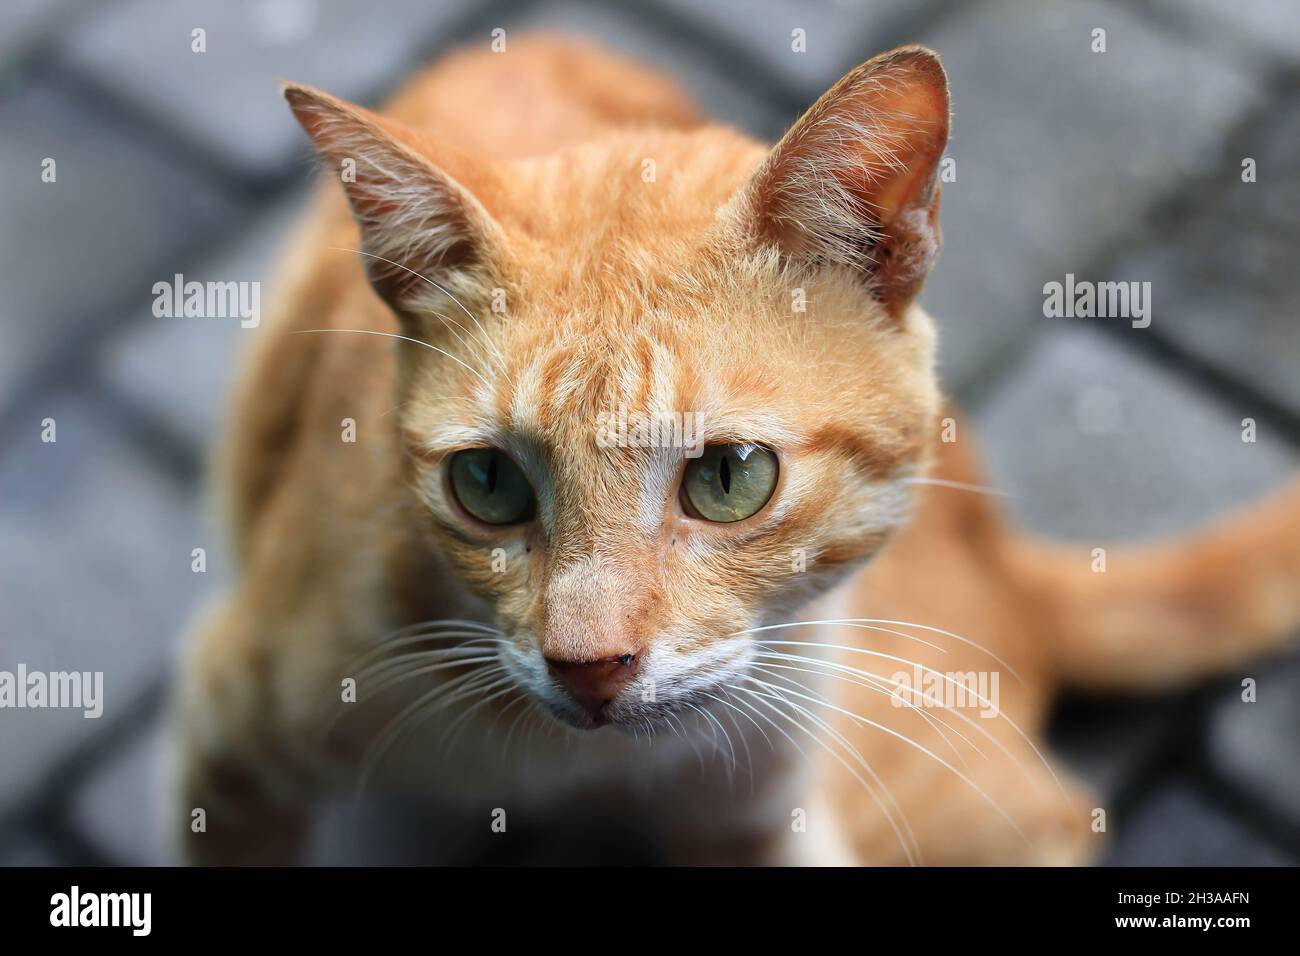 Une race locale de chat orange a été repérée près du temple Borobudur à Magelang, en Java central. Banque D'Images